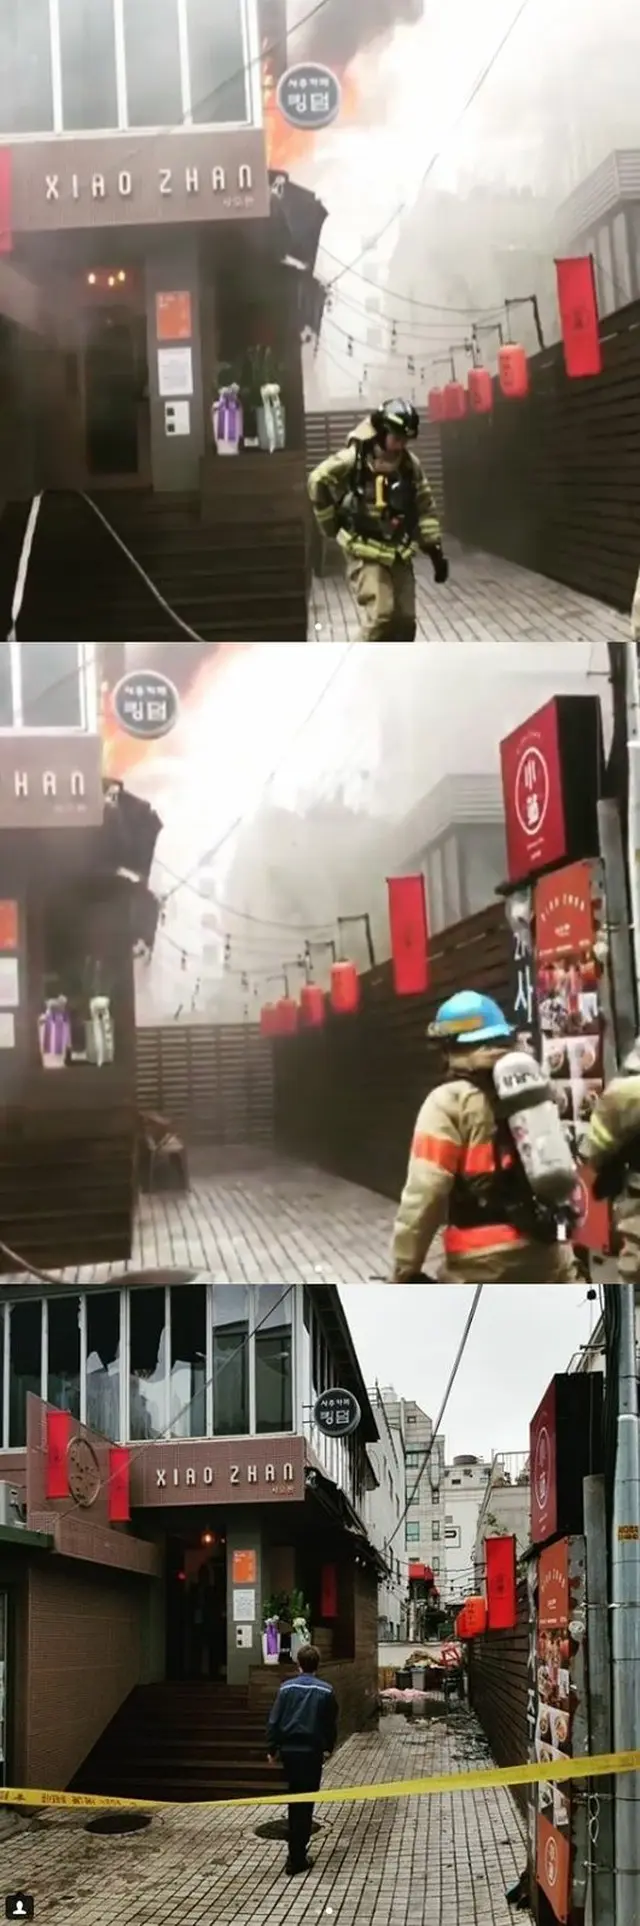 歌手ヘンリー運営のレストラン、火災により営業休止に…「他店の事故…人命被害はなし」（提供:OSEN）